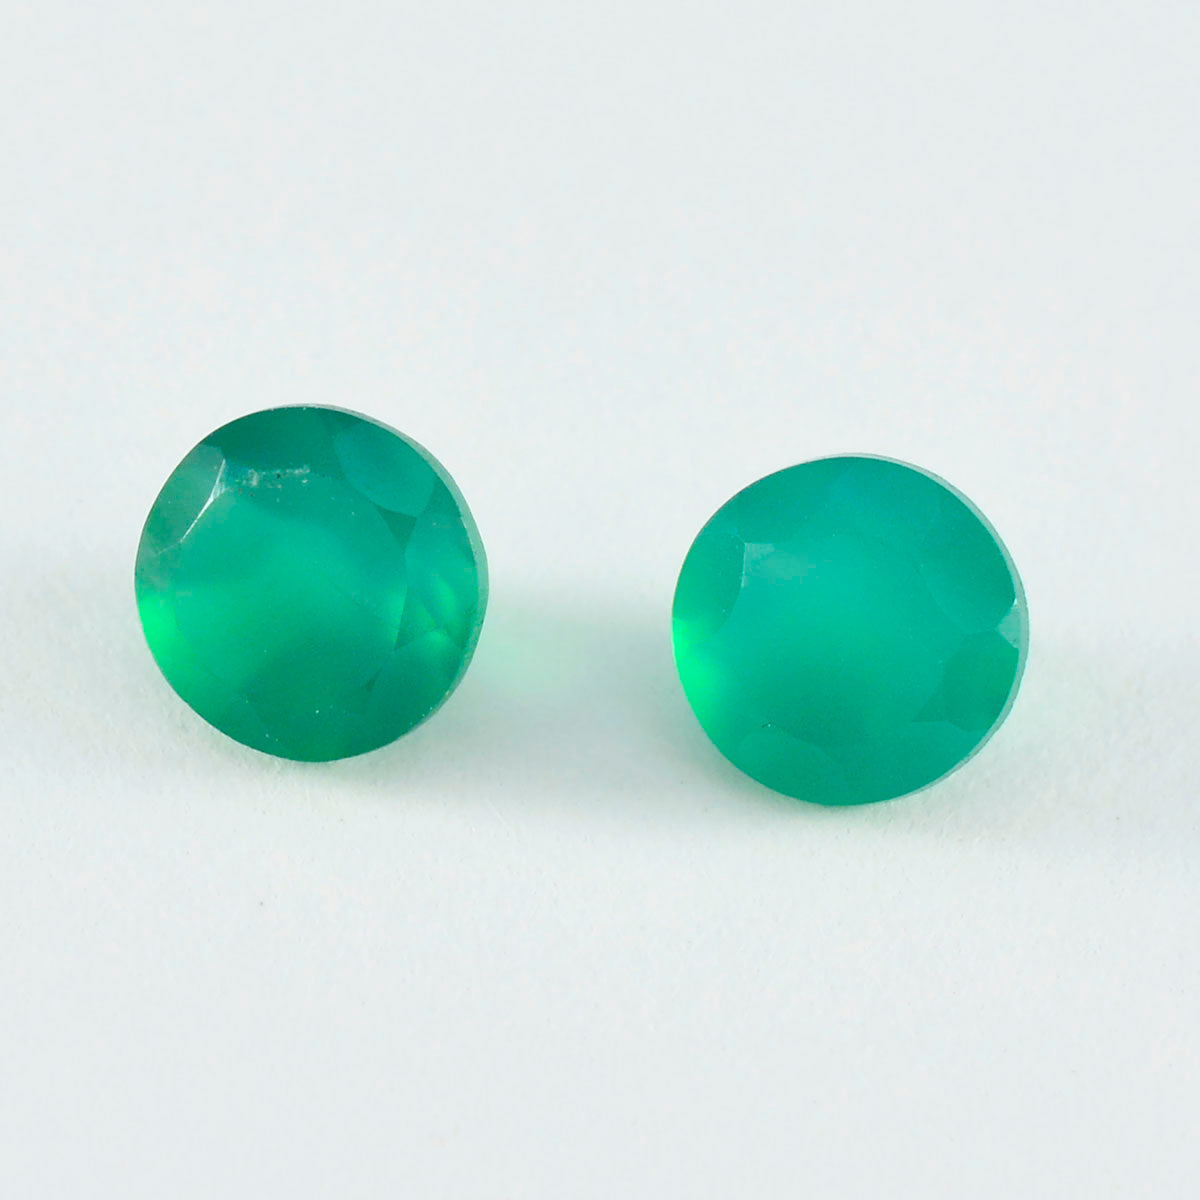 riyogems 1pc リアル グリーン オニキス ファセット 9x9 mm ラウンド形状の魅力的な品質のルース宝石